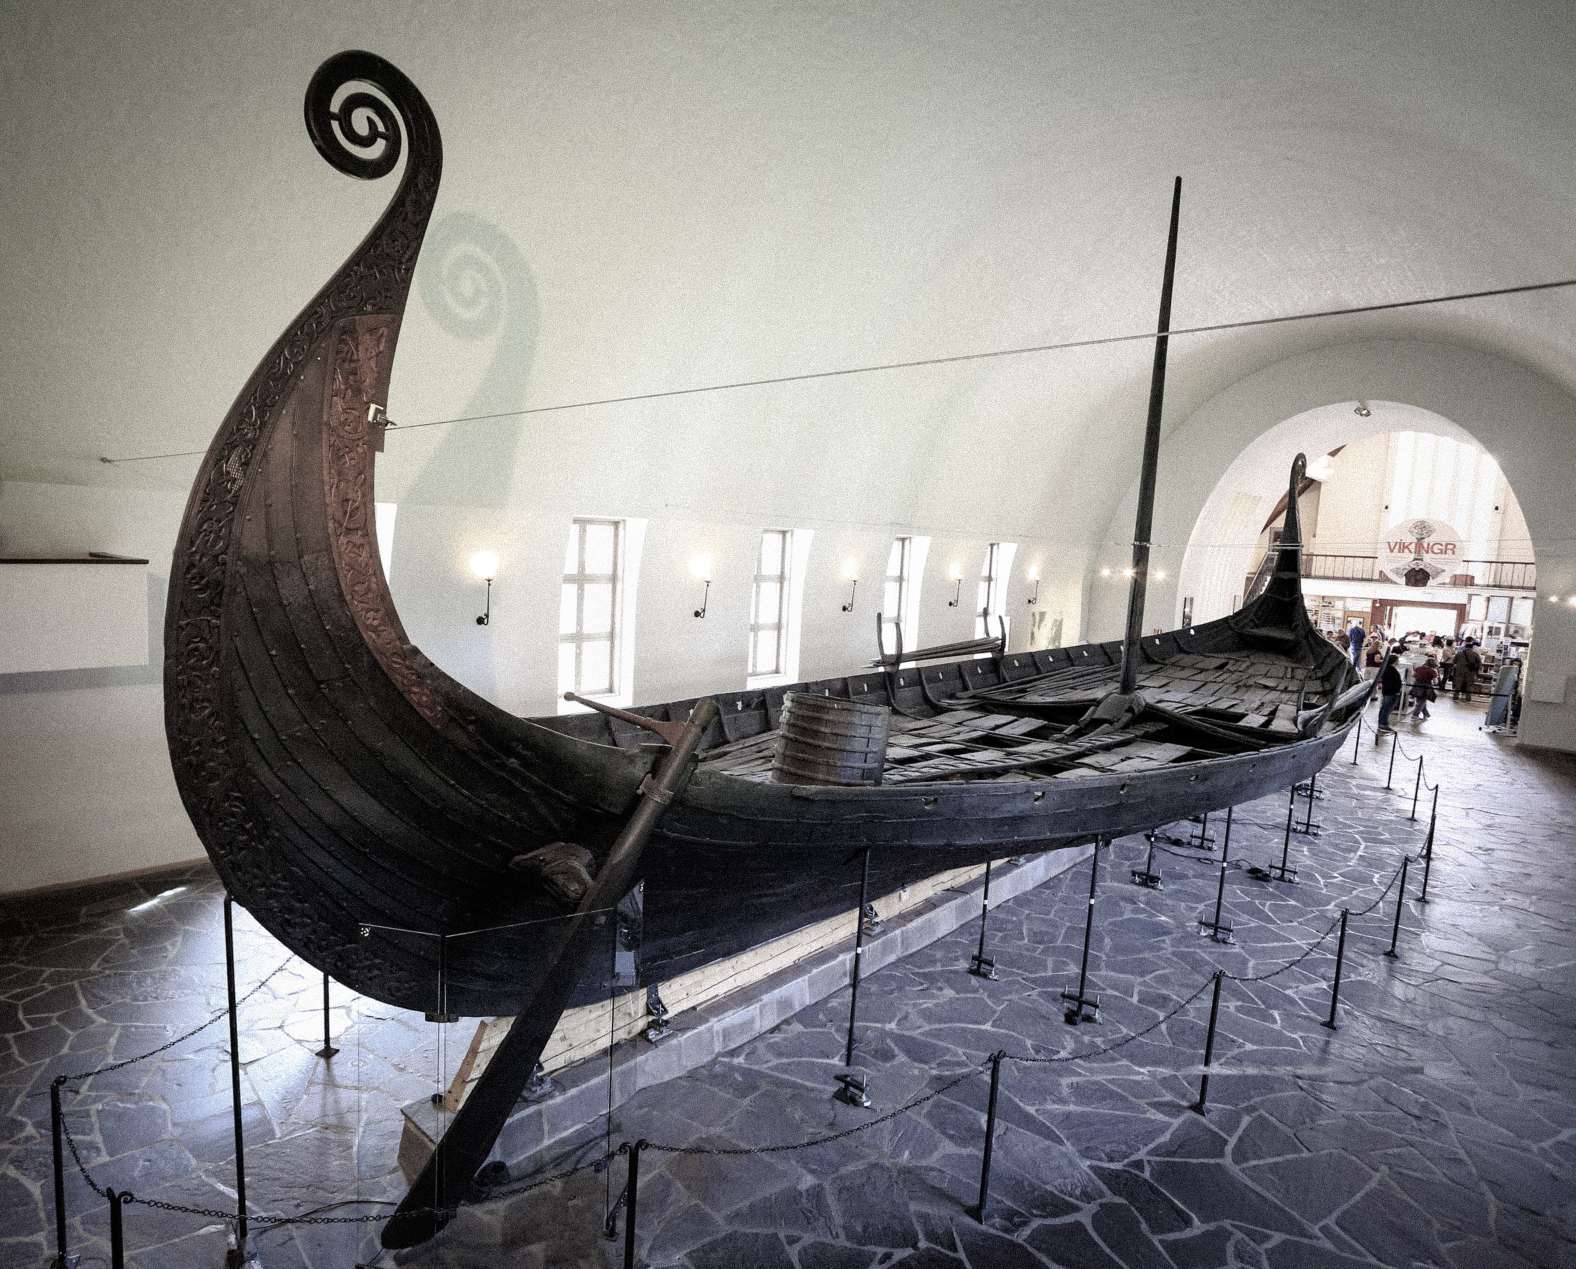 Kapal Viking di Museum Kapal Viking di kota Oslo di Norwegia. © Kredit Gambar: Vlad Ghiea | Dilisensikan dari DreamsTime.com (Foto Saham Penggunaan Editorial, ID: 155282591)